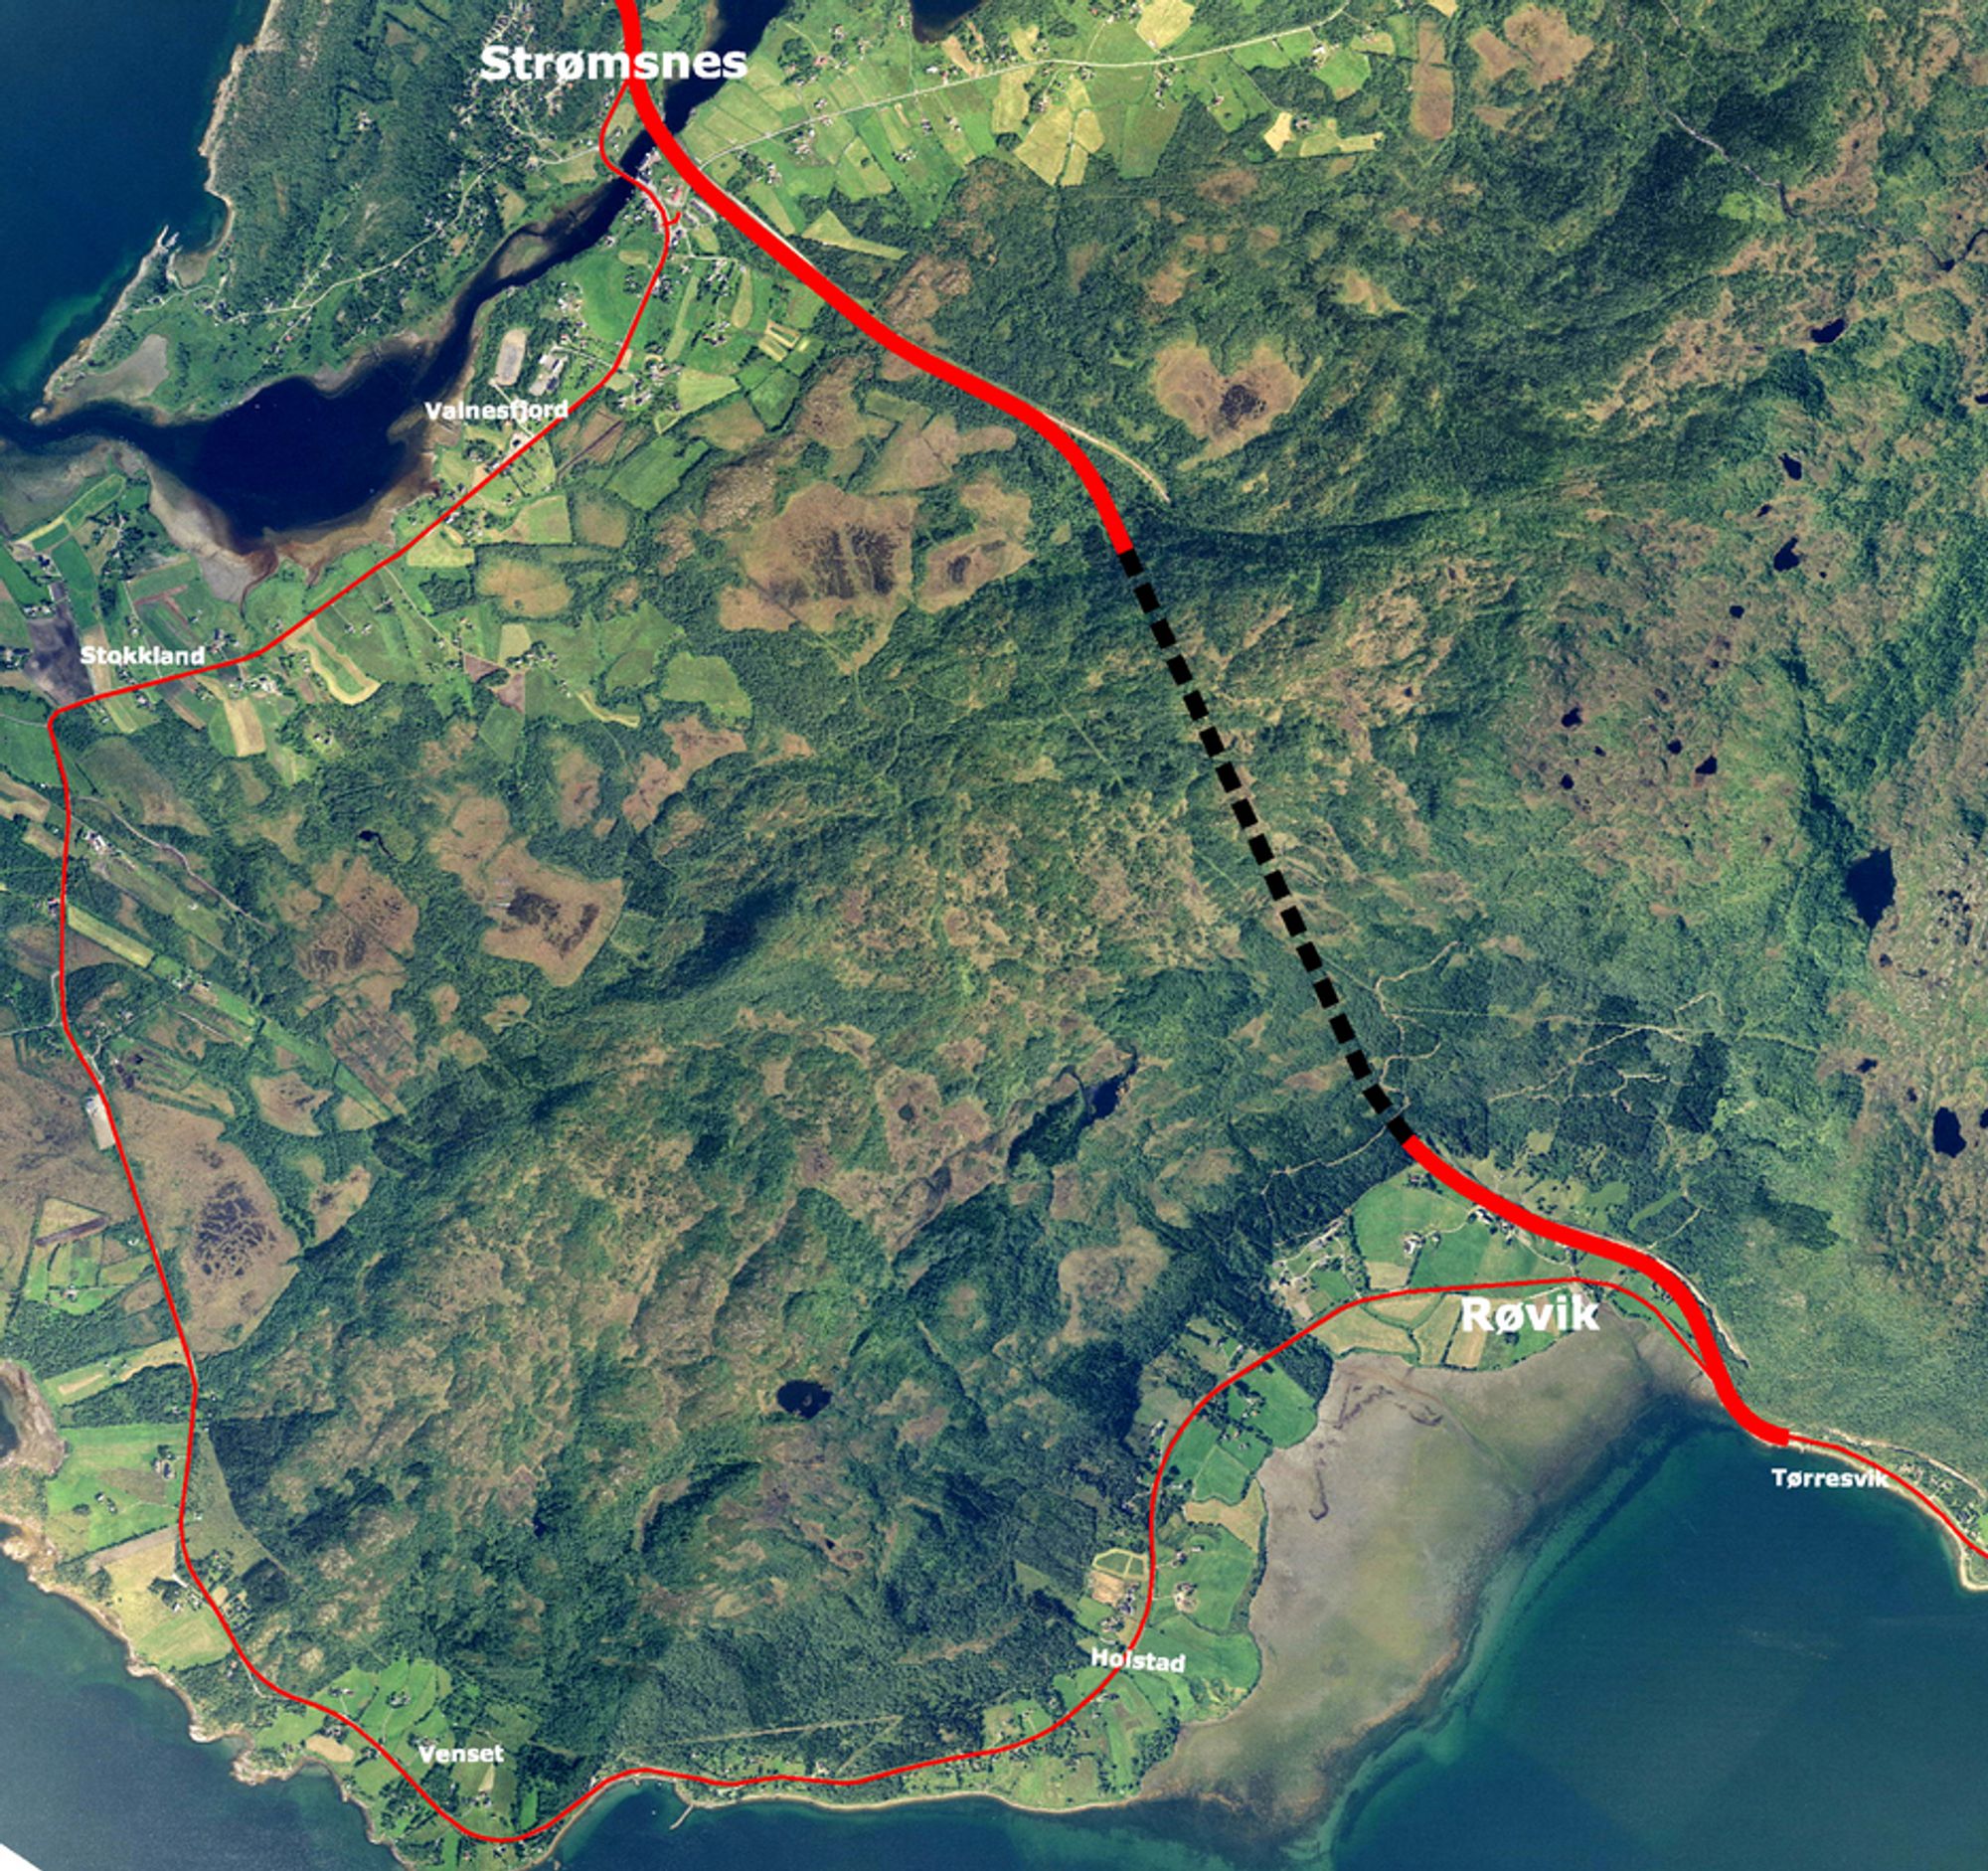 I dag går riksveg 80 mellom Røvik og Strømsnes langs strandlinjen. Den nye vegen vil gå i nesten rett linje mellom ytterpunktene. Veglengden blir redusert til det halve.